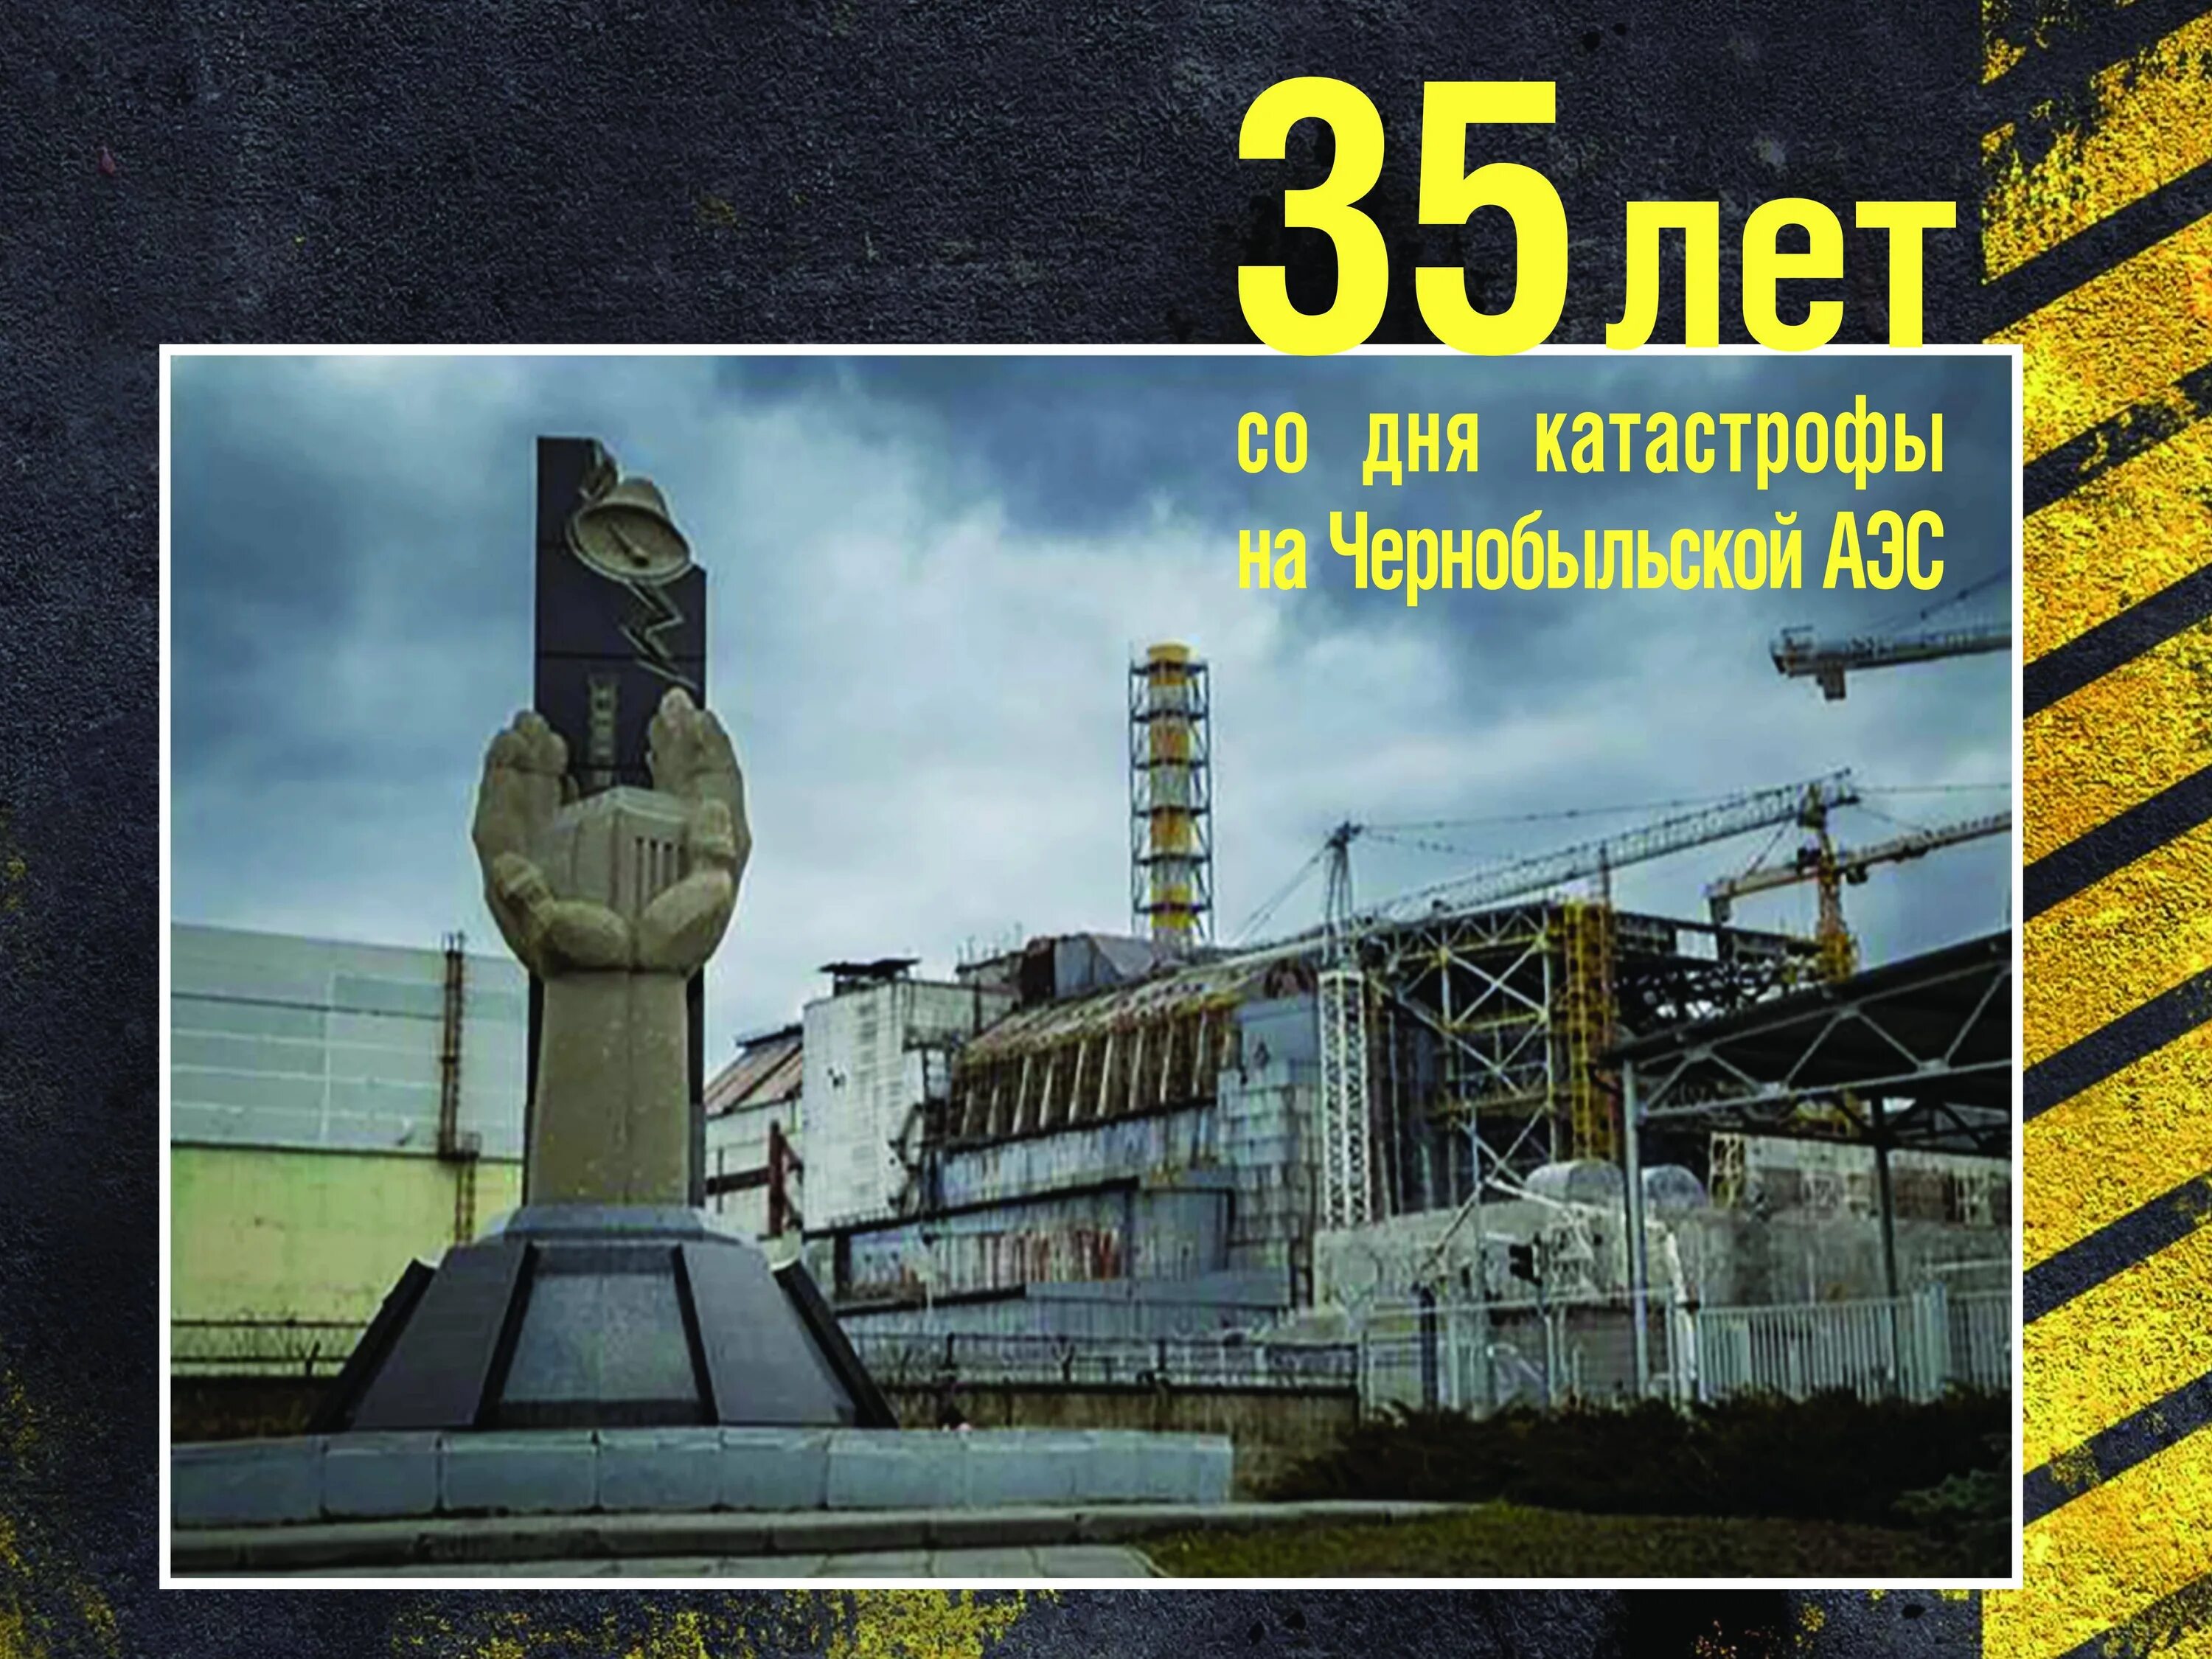 В каком году случилась чернобыльская катастрофа. 26 Апреля 1986 день памяти Чернобыльской АЭС. Чернобыль взрыв атомной станции 1986. ЧАЭС 26.04.1986. 35 Лет со дня аварии на Чернобыльской АЭС.